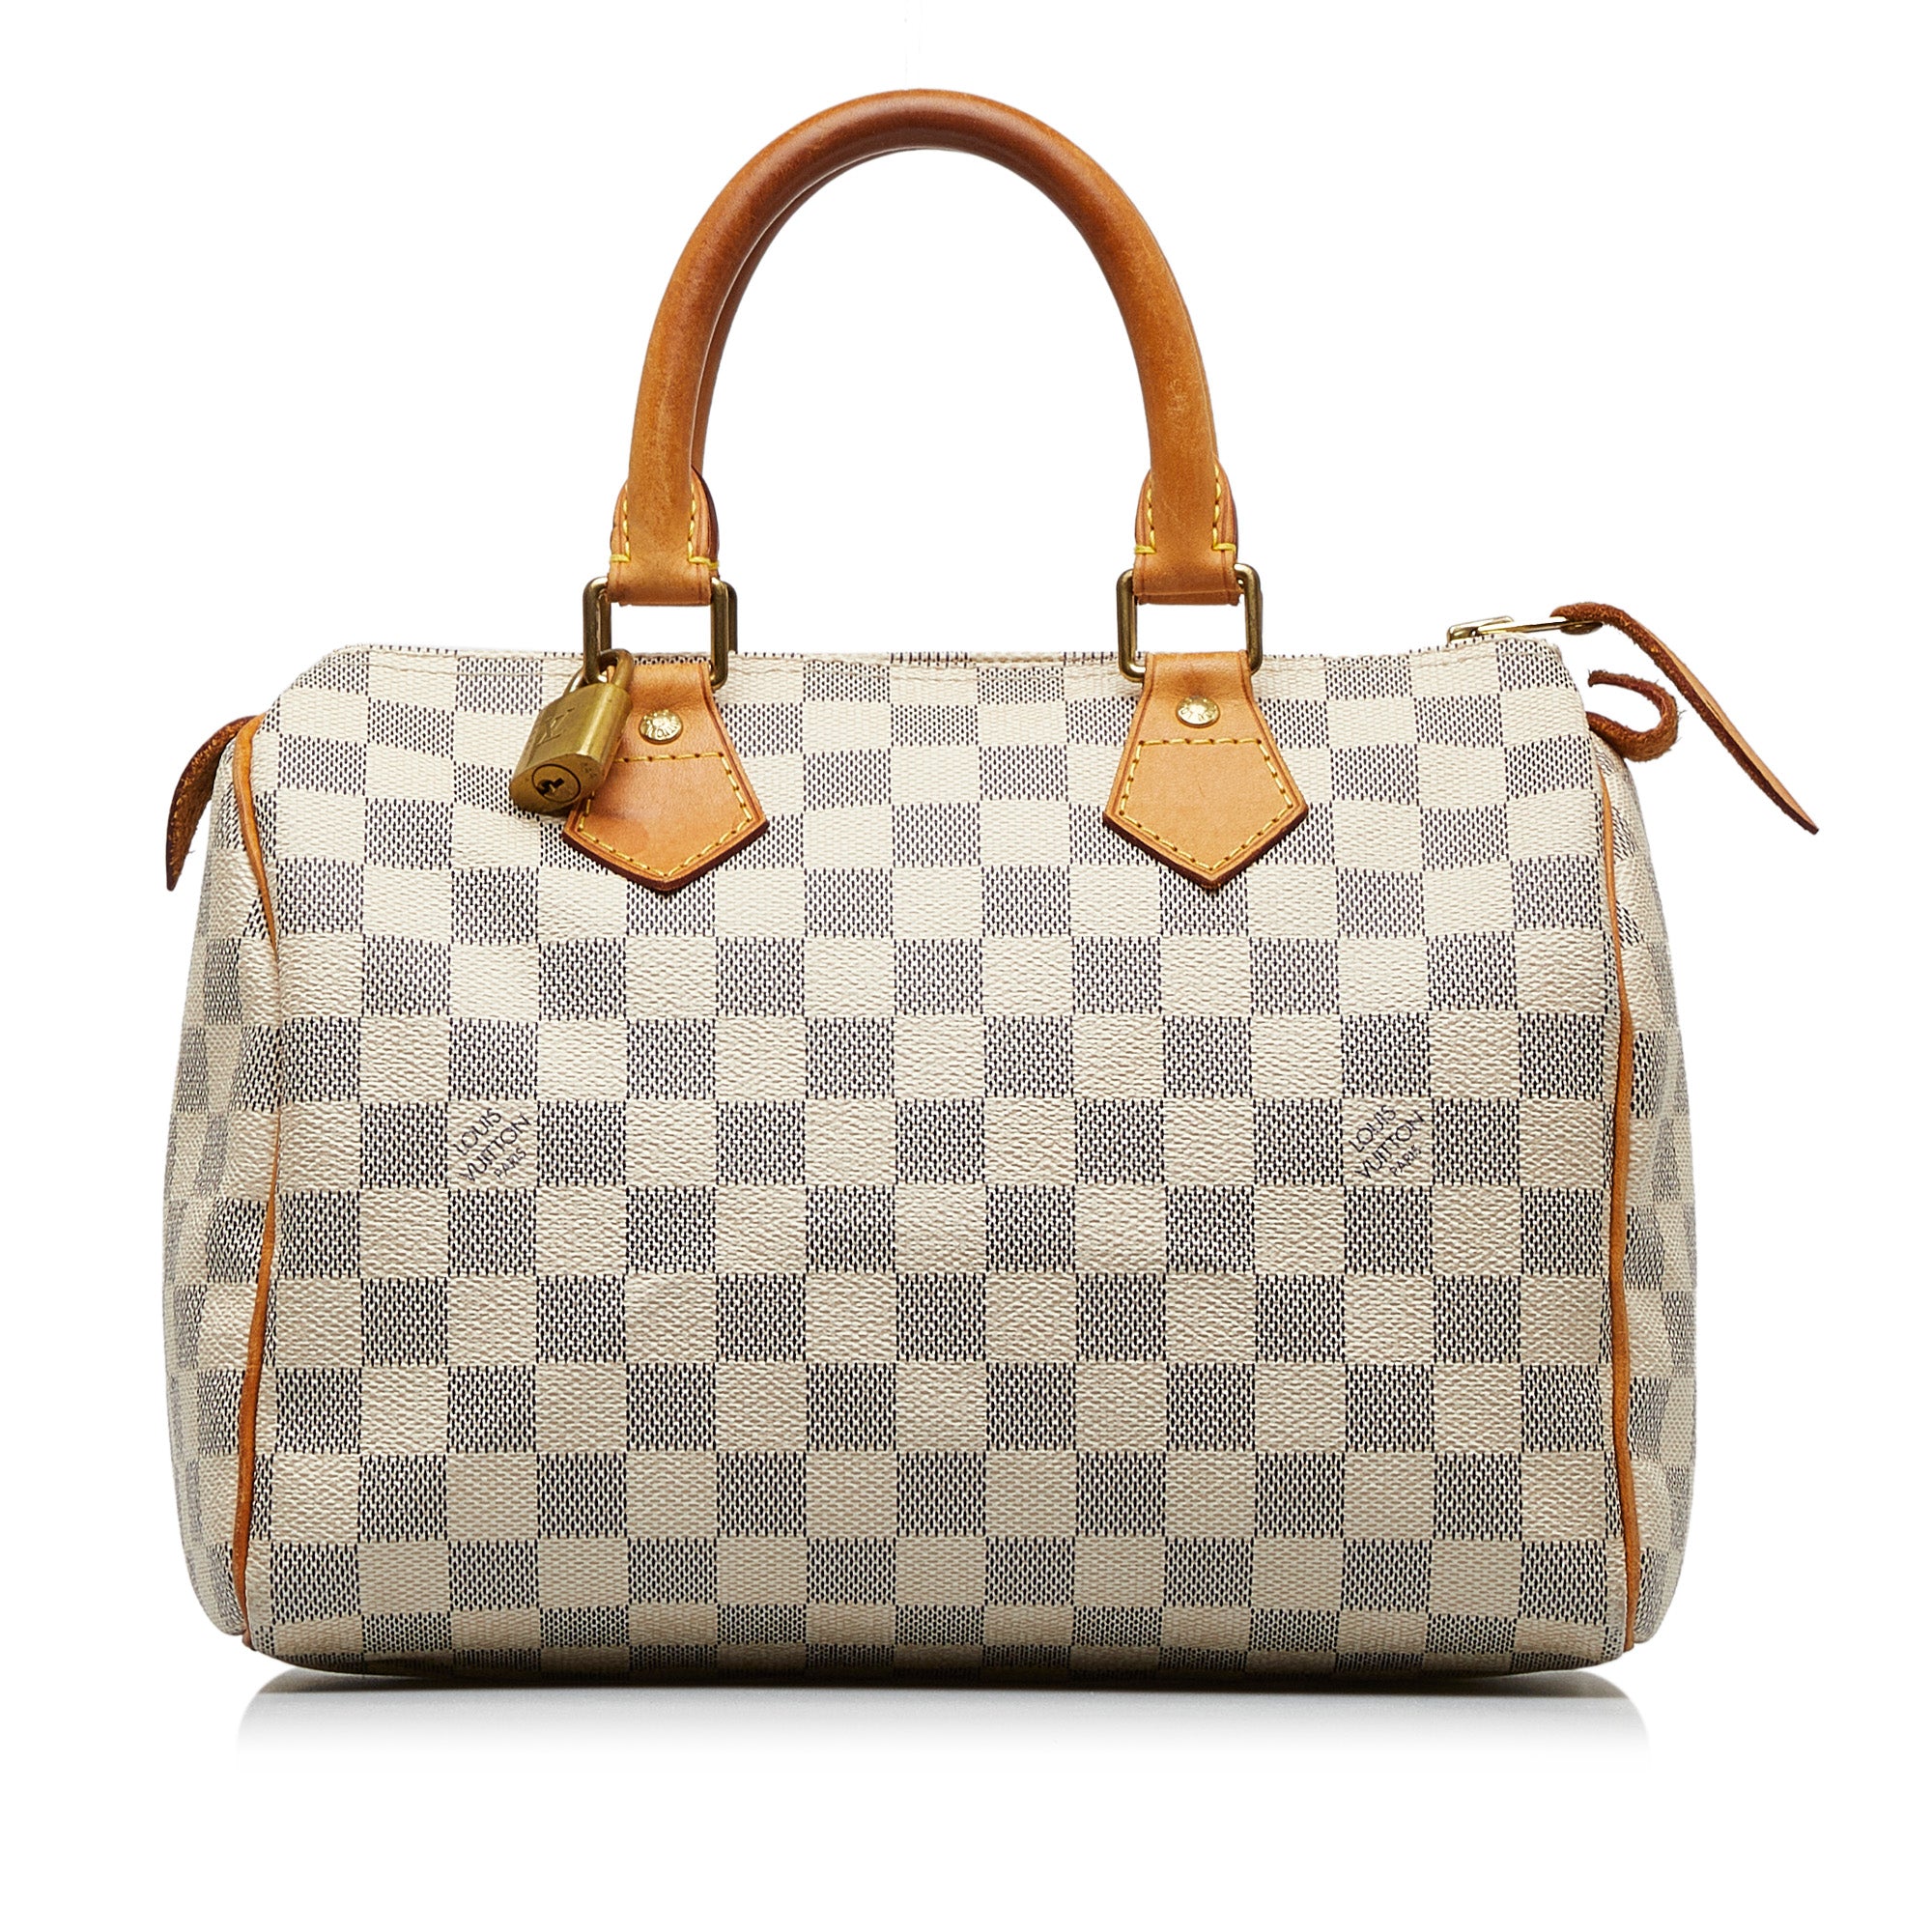 White Louis Vuitton Damier Azur Speedy 25 Boston Bag